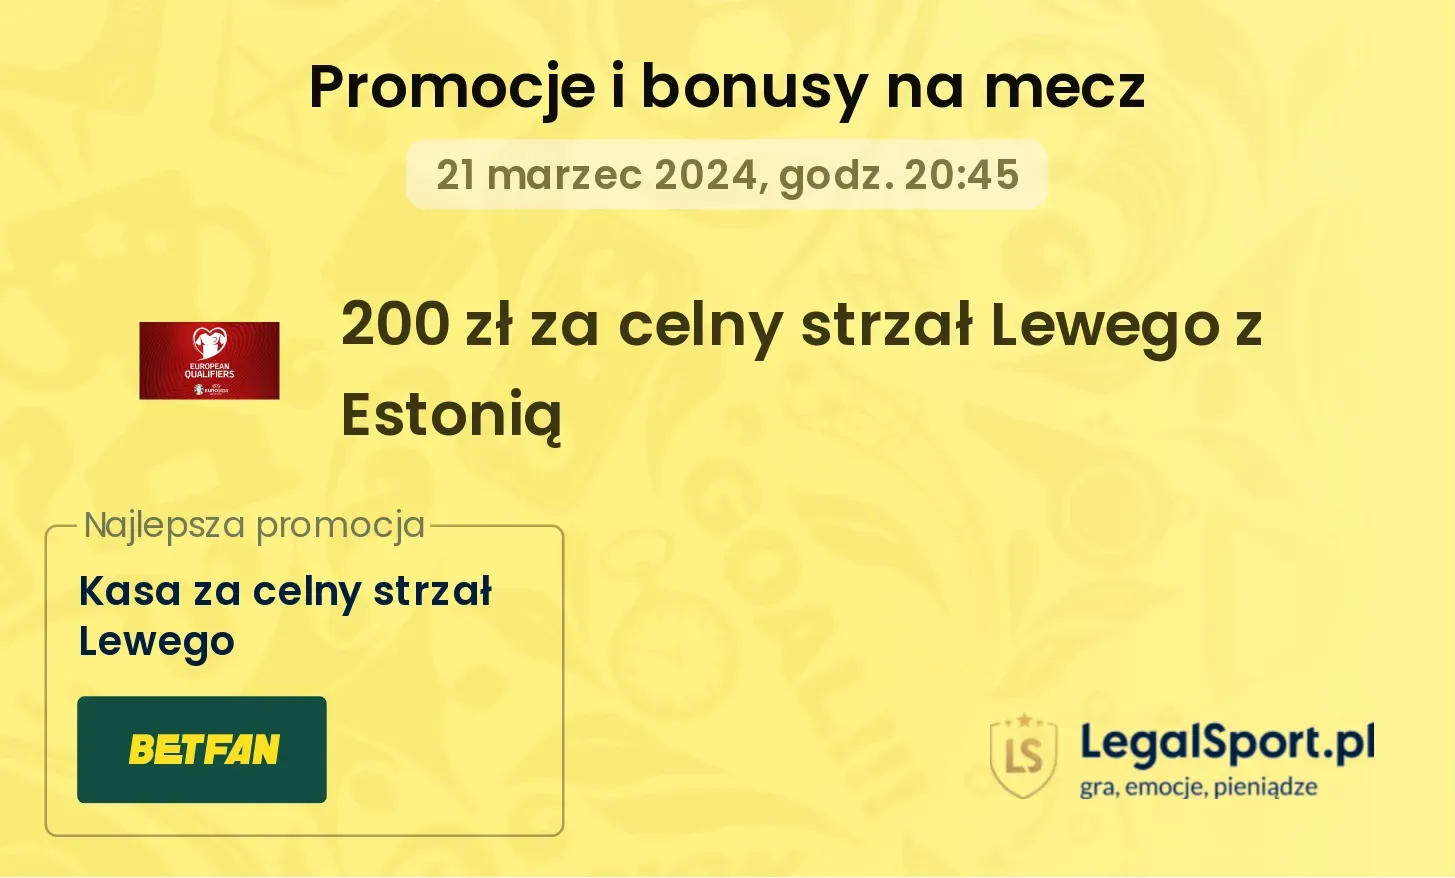 200 zł za celny strzał Lewego z Estonią promocje bonusy na mecz